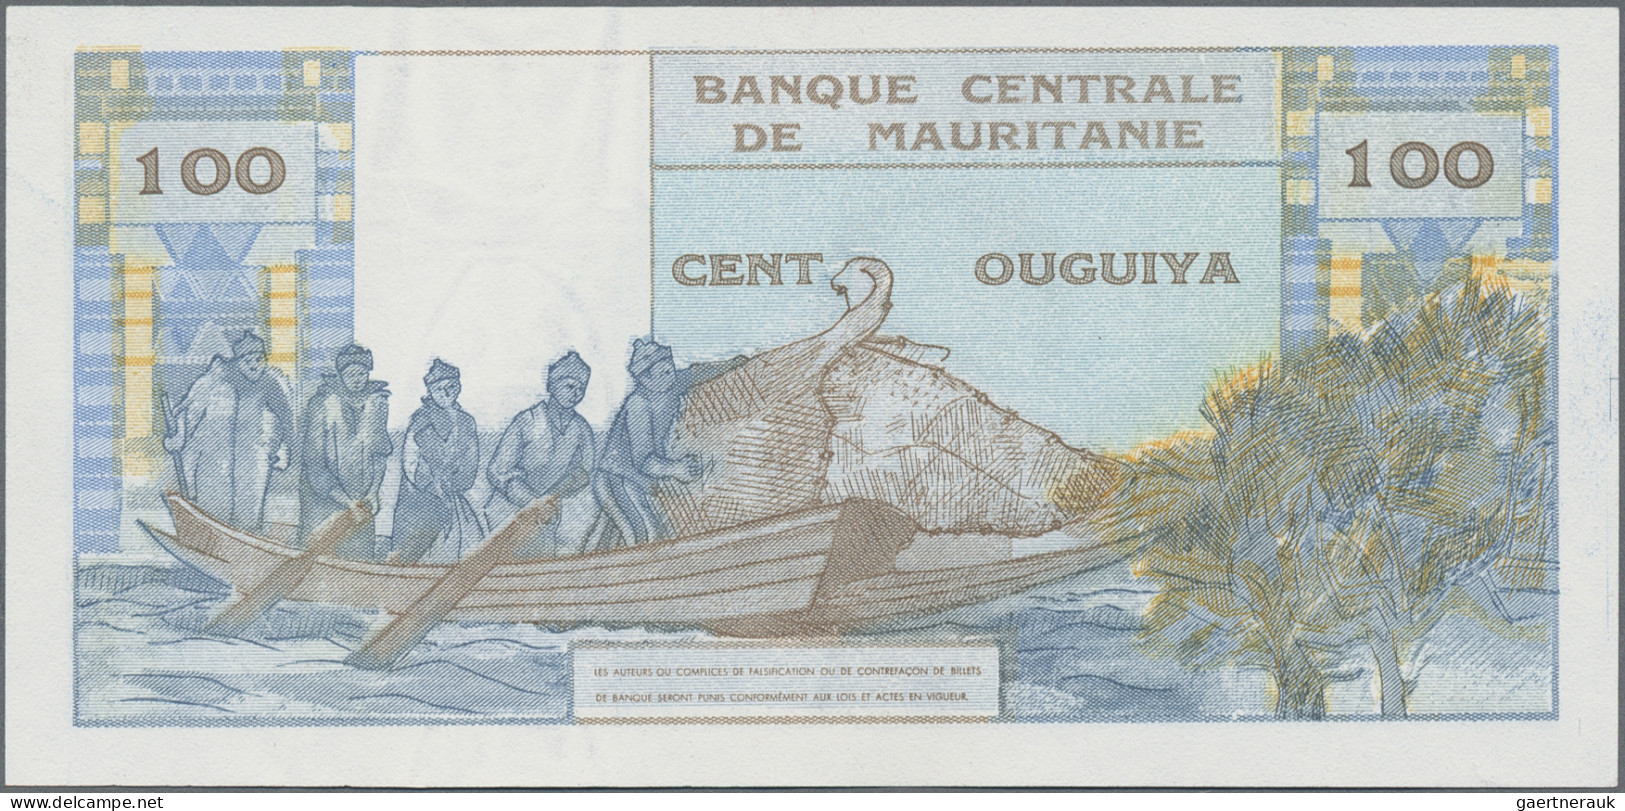 Mauritania: Banque Centrale De Mauritanie, 100 Ouguiya 1973, P.1 In Perfect UNC - Mauritanie